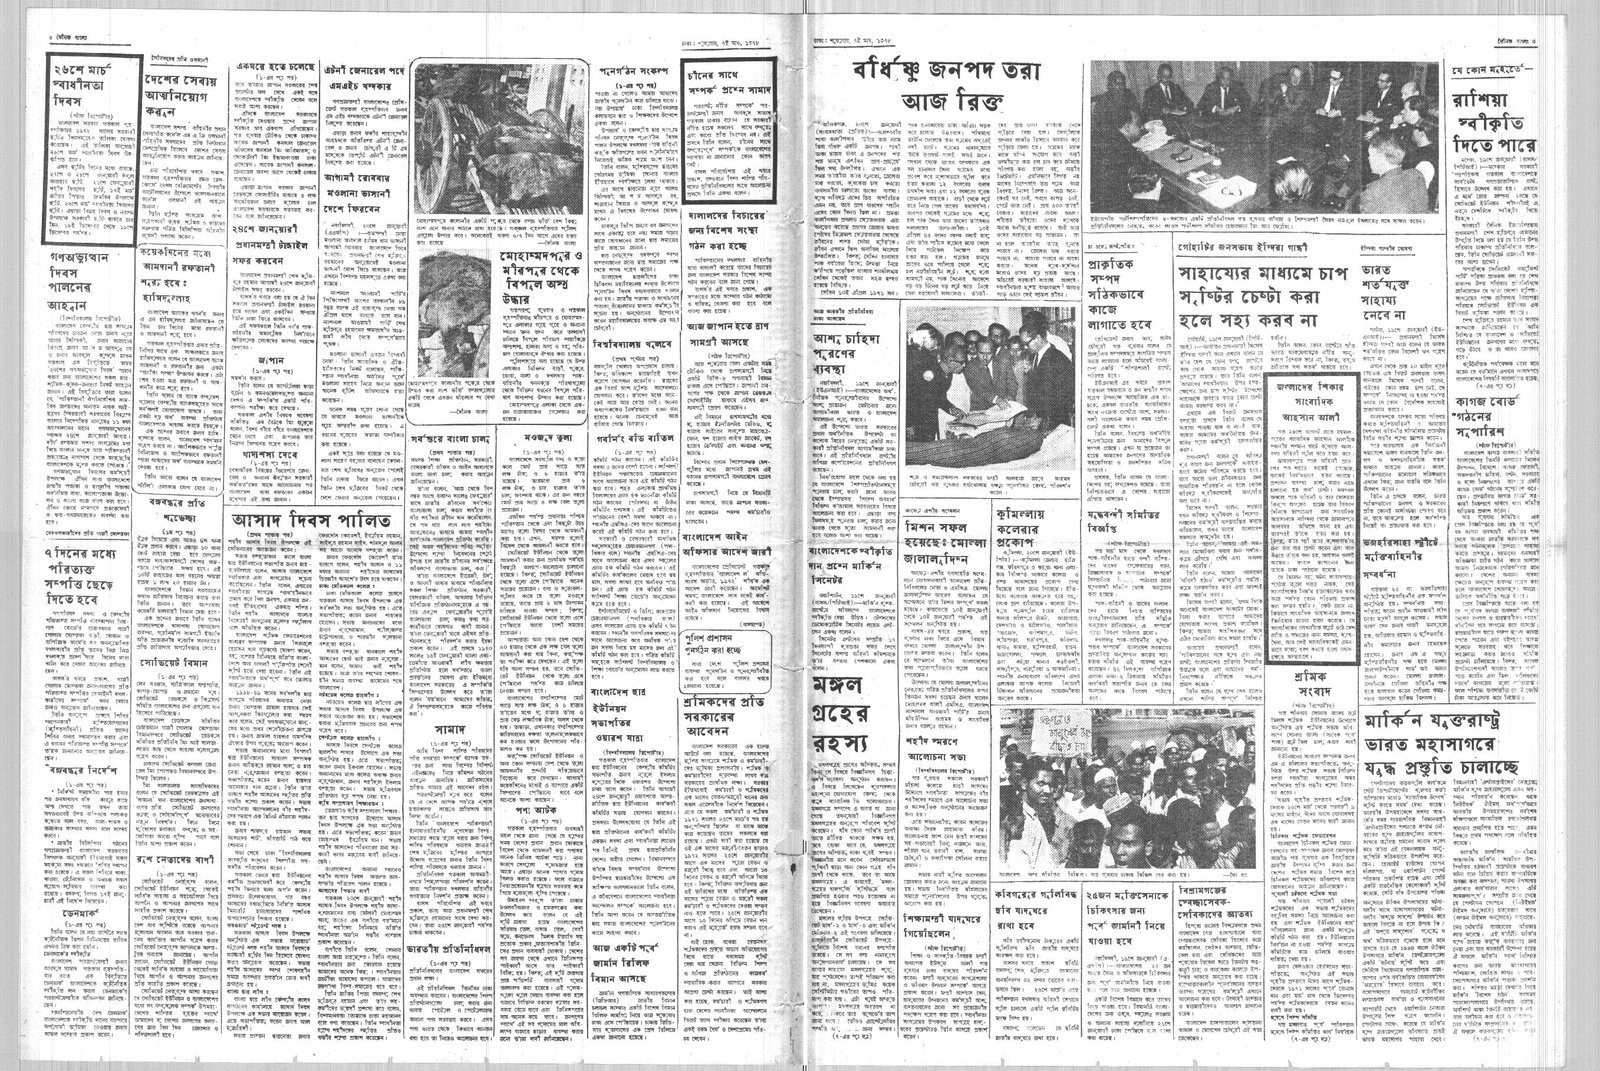 21JAN1972-DAINIK BANGLA-Regular-Page 3 and 6